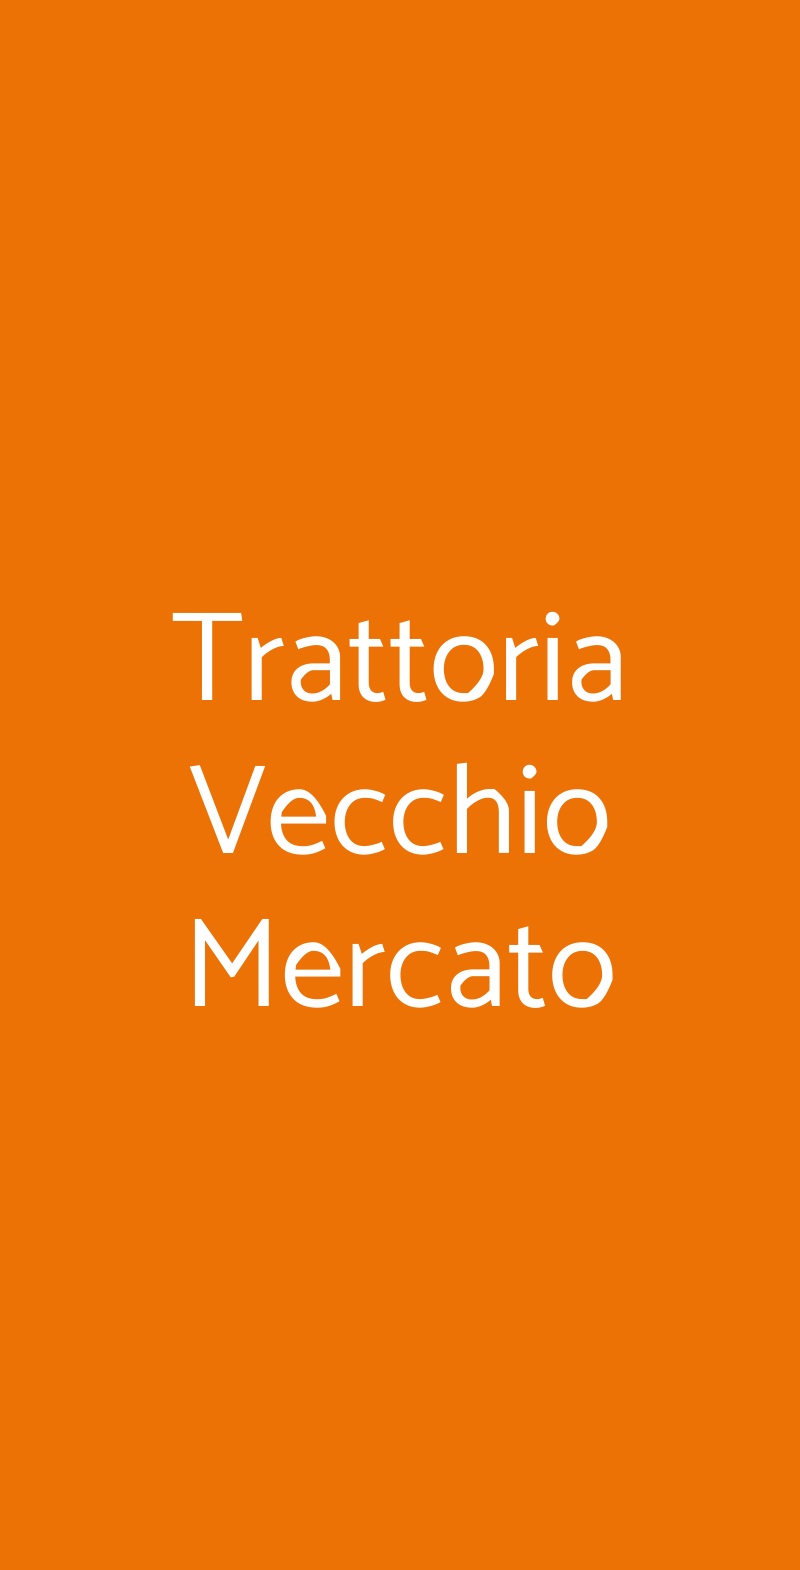 Trattoria Vecchio Mercato Bologna menù 1 pagina